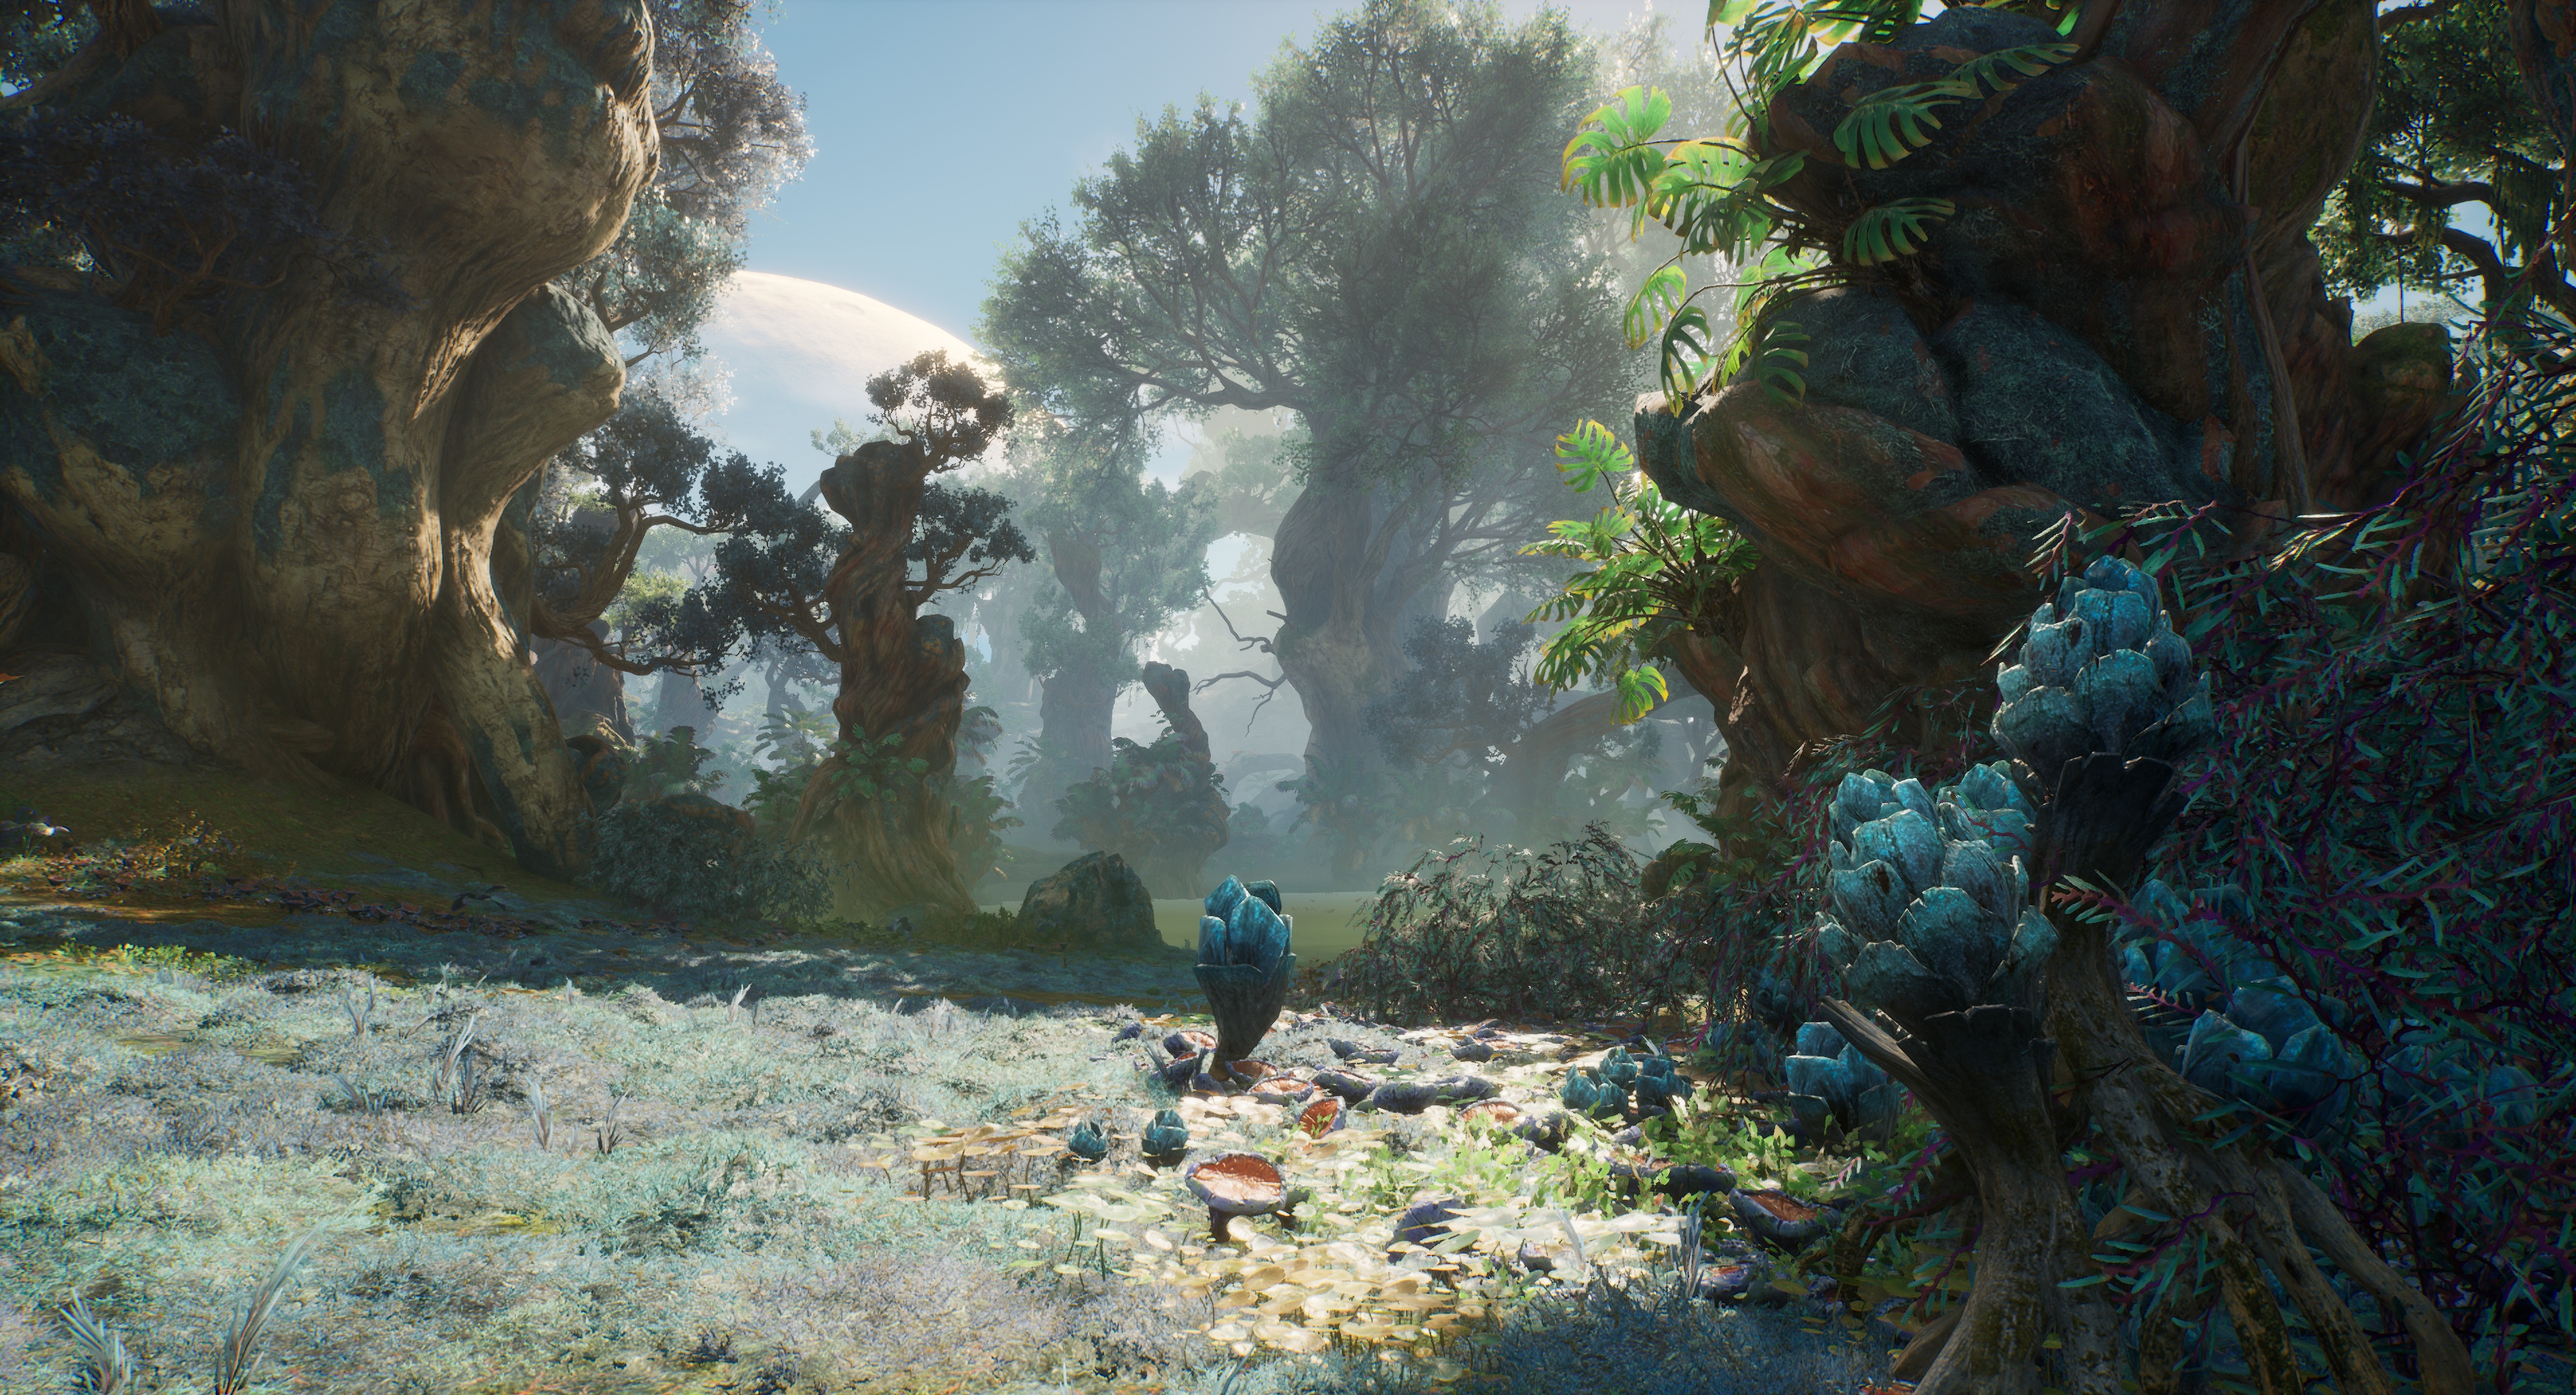 (O jogo começa numa região florestal que faz lembrar o filme Avatar de James Cameron.)